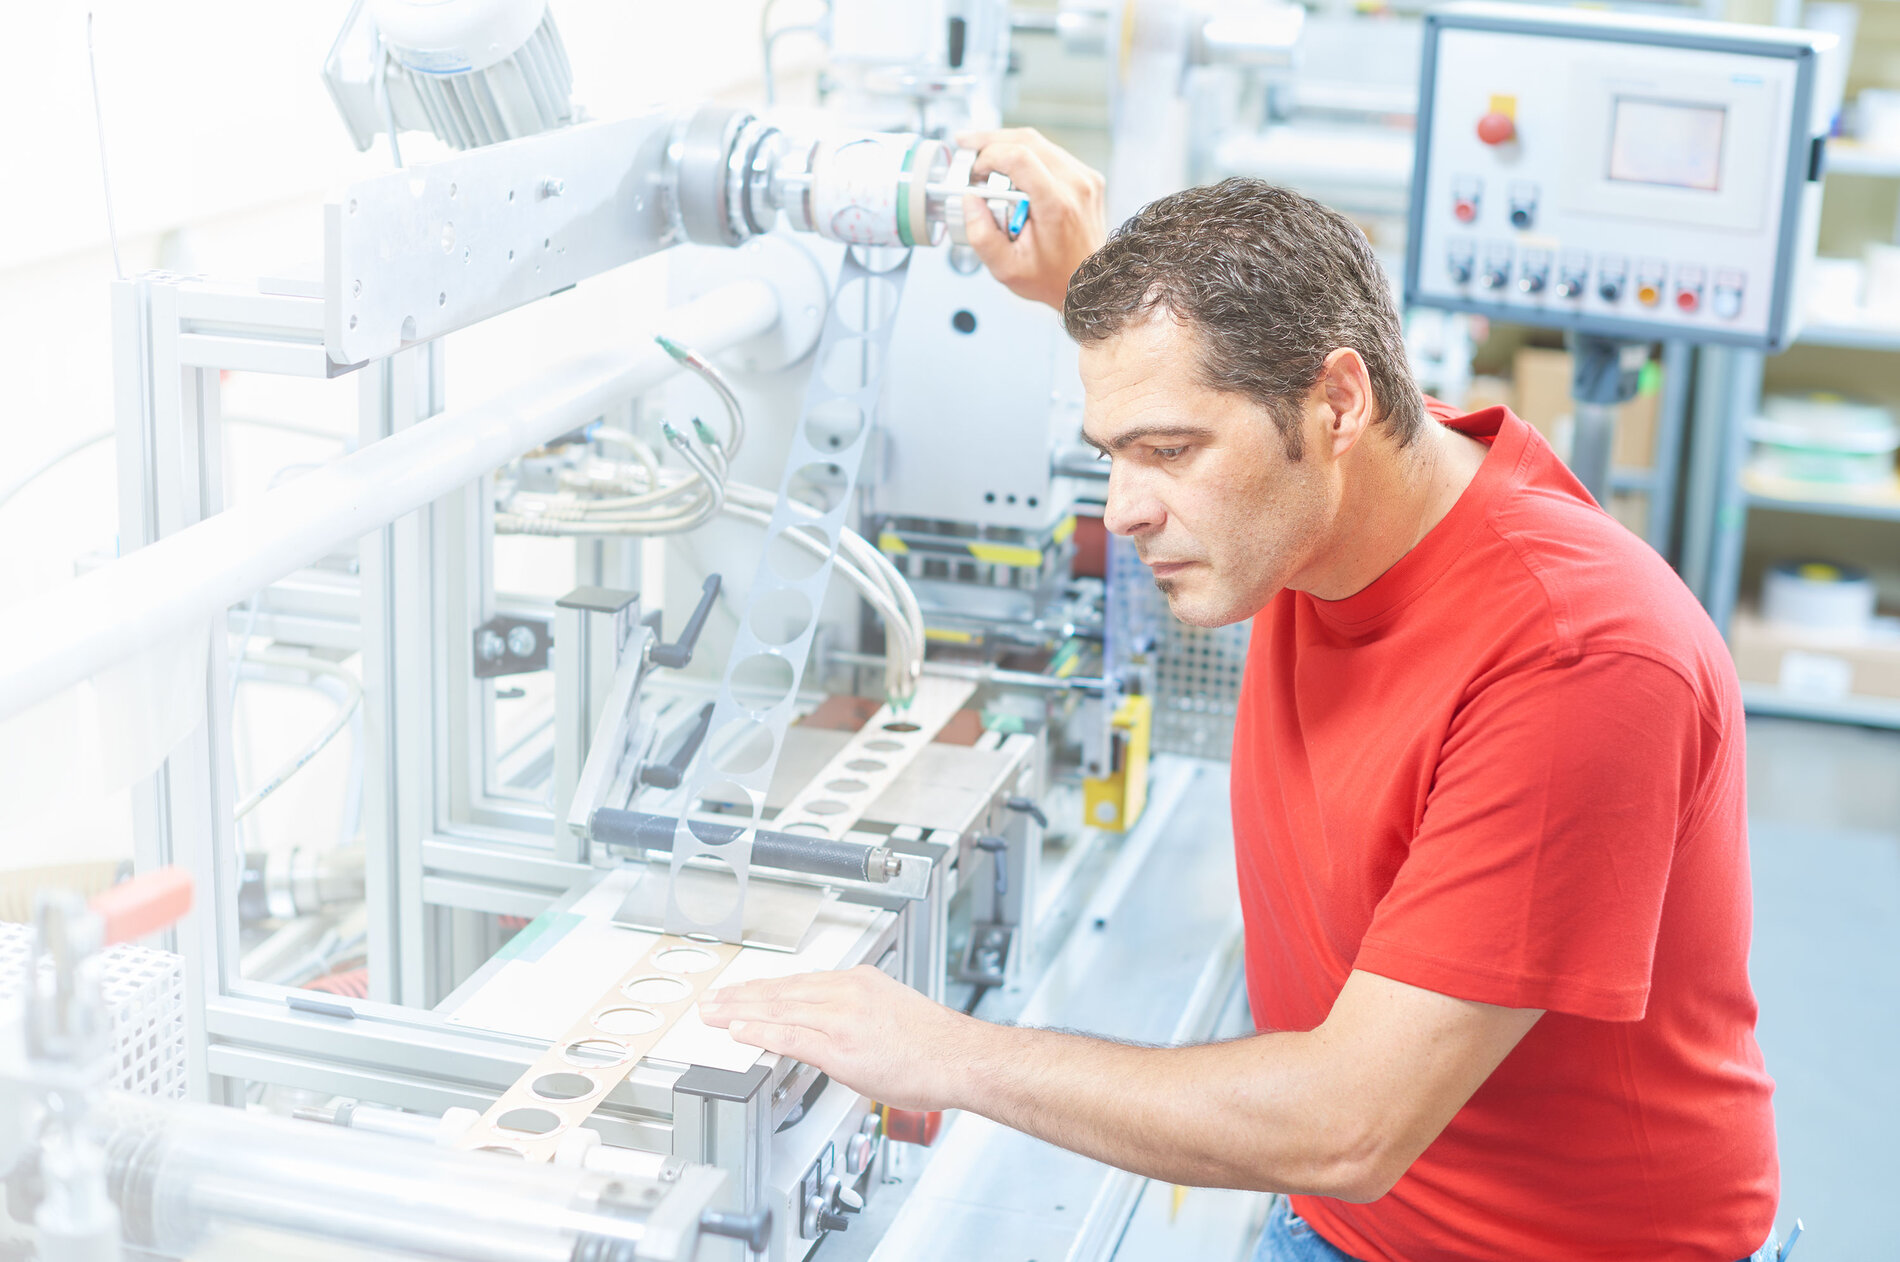 Auf dem Bild ist die Produktion von Formstanzteile durch eine Maschine, die von einem Arbeiter bedient wird, zu sehen. Dieser ist in einem roten IBZ Shirt. Die Maschine druckt runde Teile aus